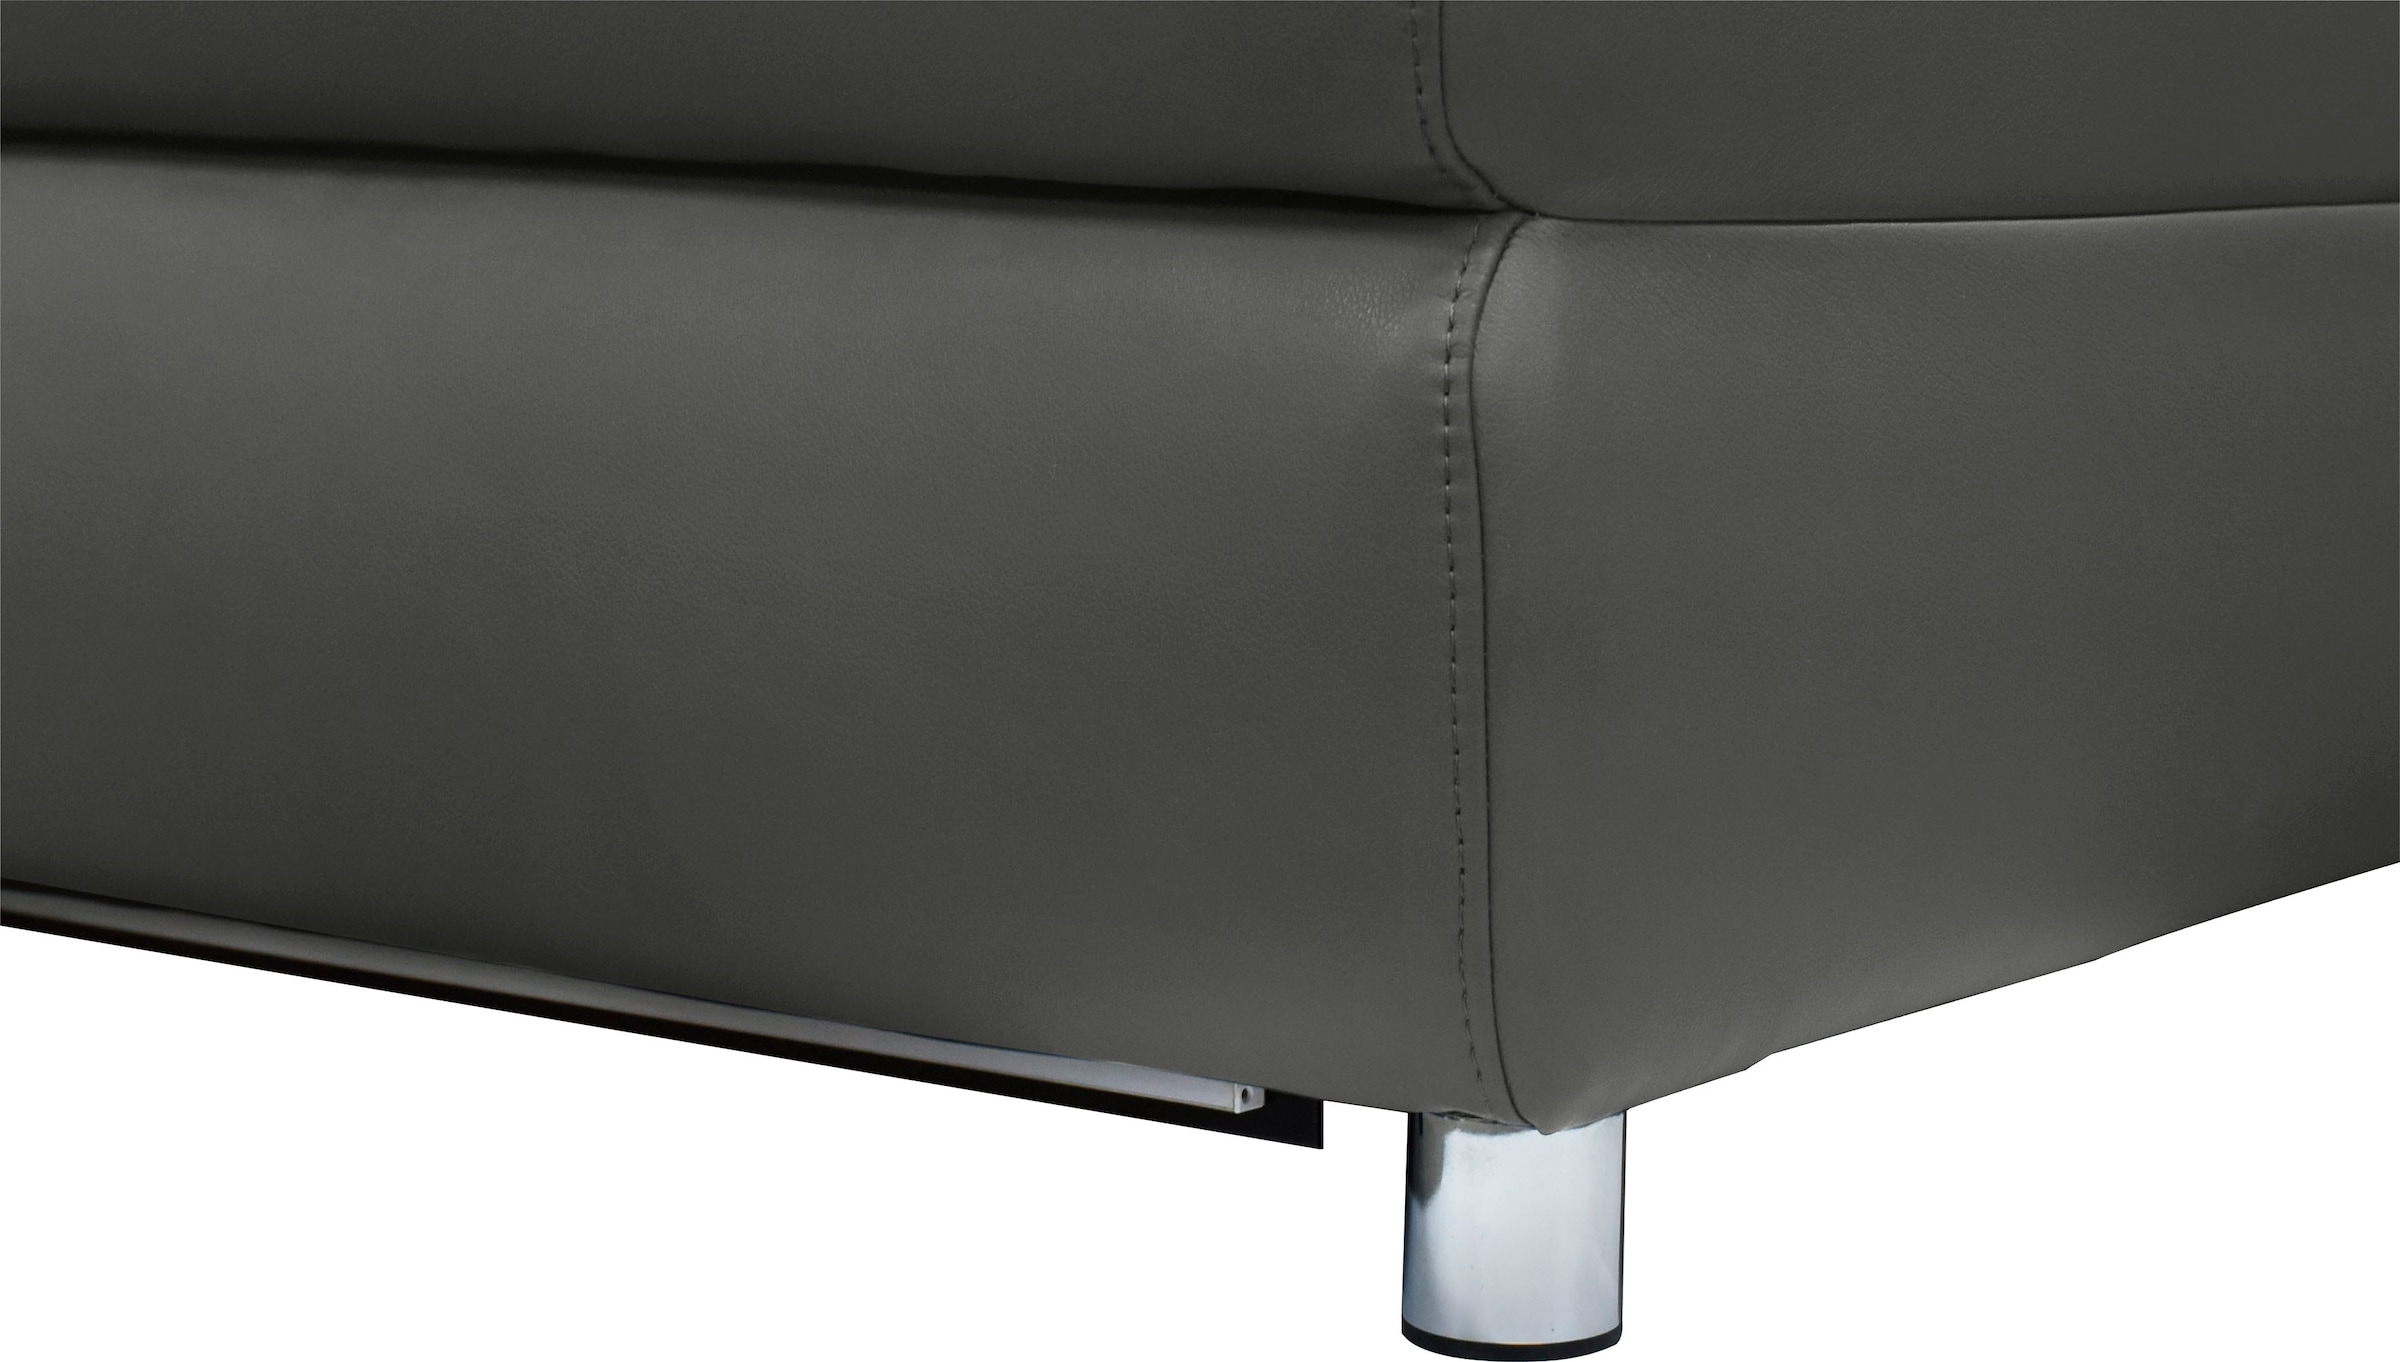 Places of Style 3-Sitzer »Pareli 229cm, manuelle u. elektr. Relaxfunktion in 2 Sitzen«, USB, KT-Verstellung, LED Beleuchtung, in Echtleder, Kunstleder, Web